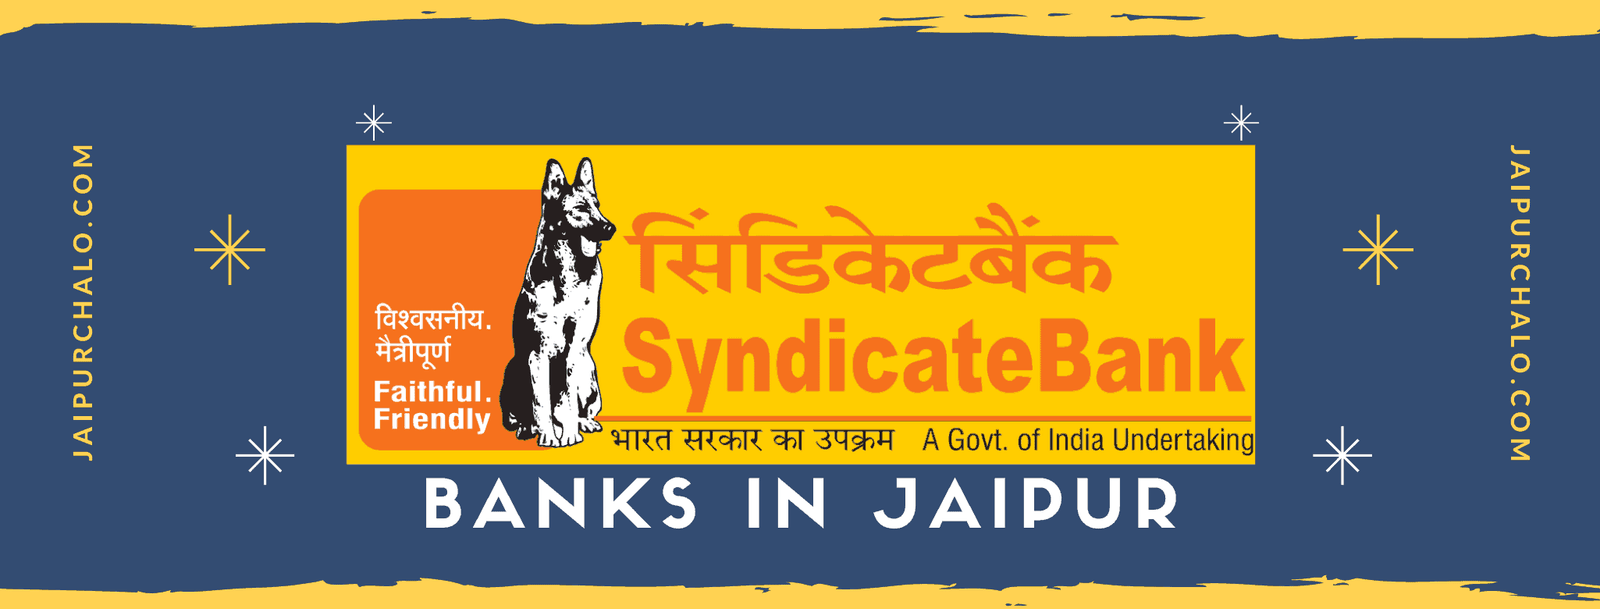 Syndicate bank in jaipur